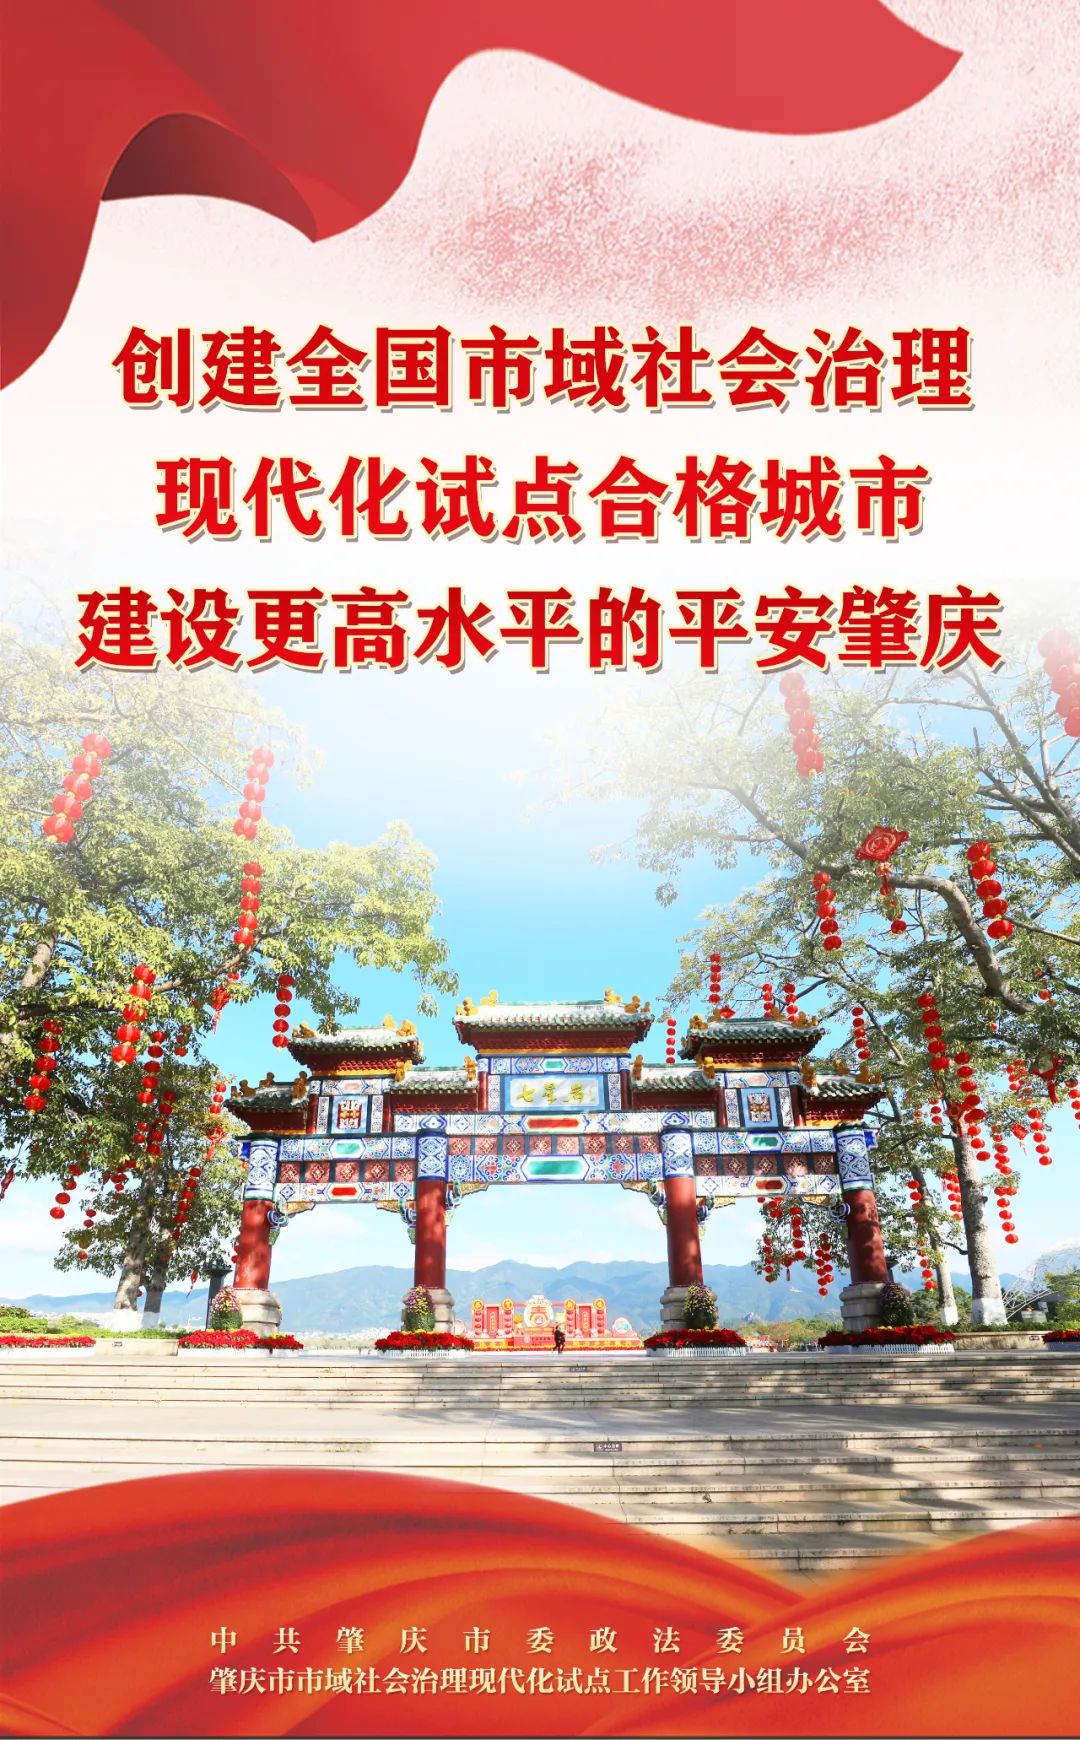 海报来了肇庆市全力创建全国市域社会治理现代化试点合格城市